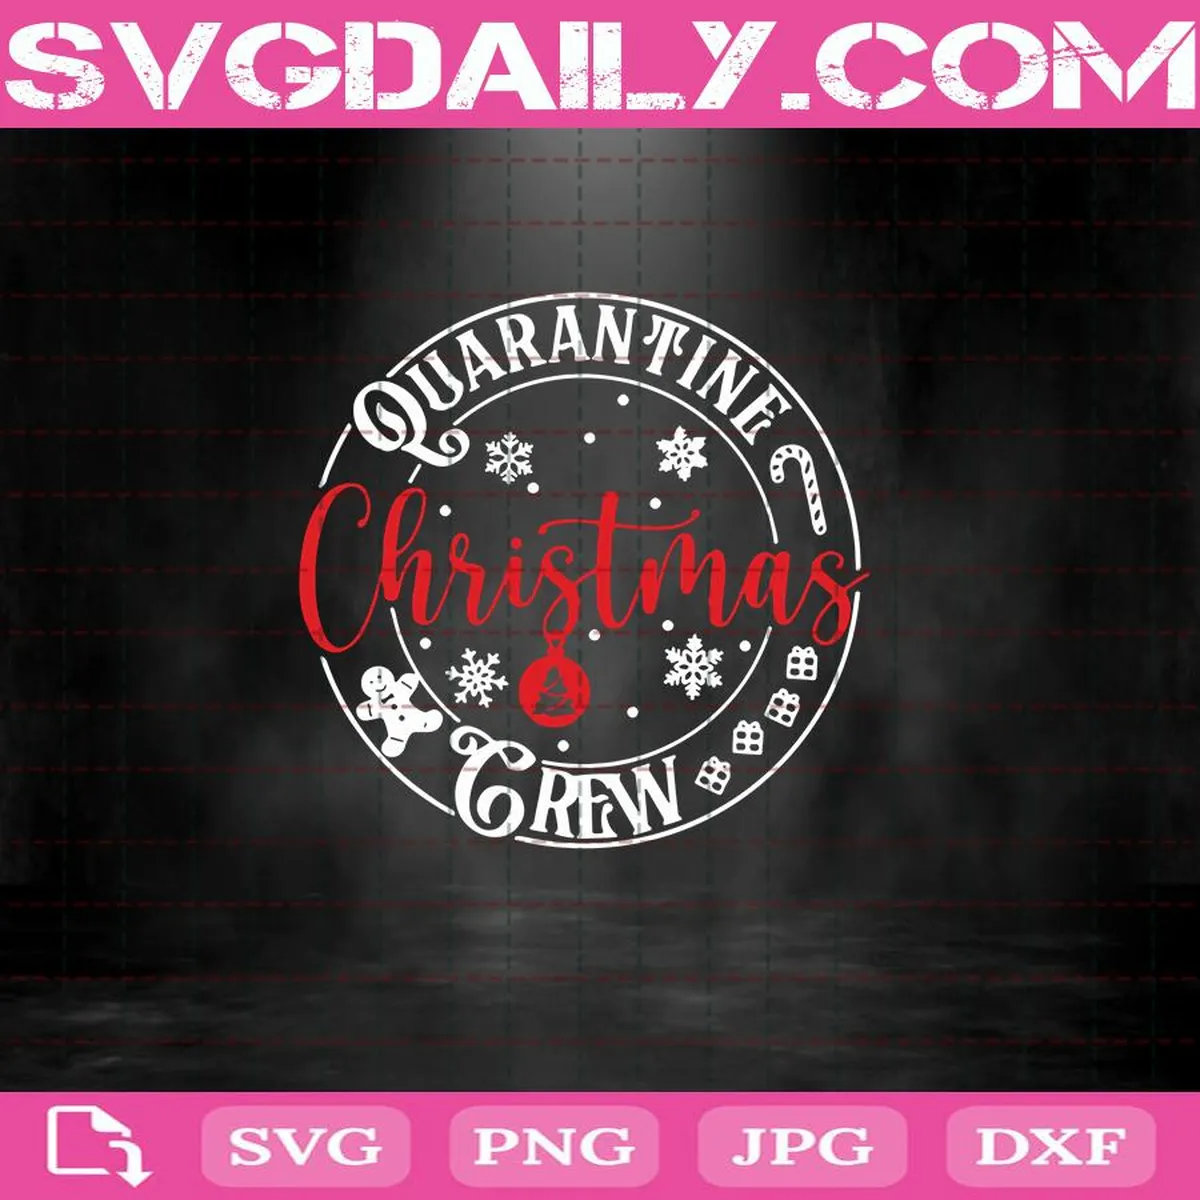 Quarantine Christmas Crew Svg, Merry Quarantine Christmas Svg, Christmas Ornaments Svg, Quarantine Christmas Svg